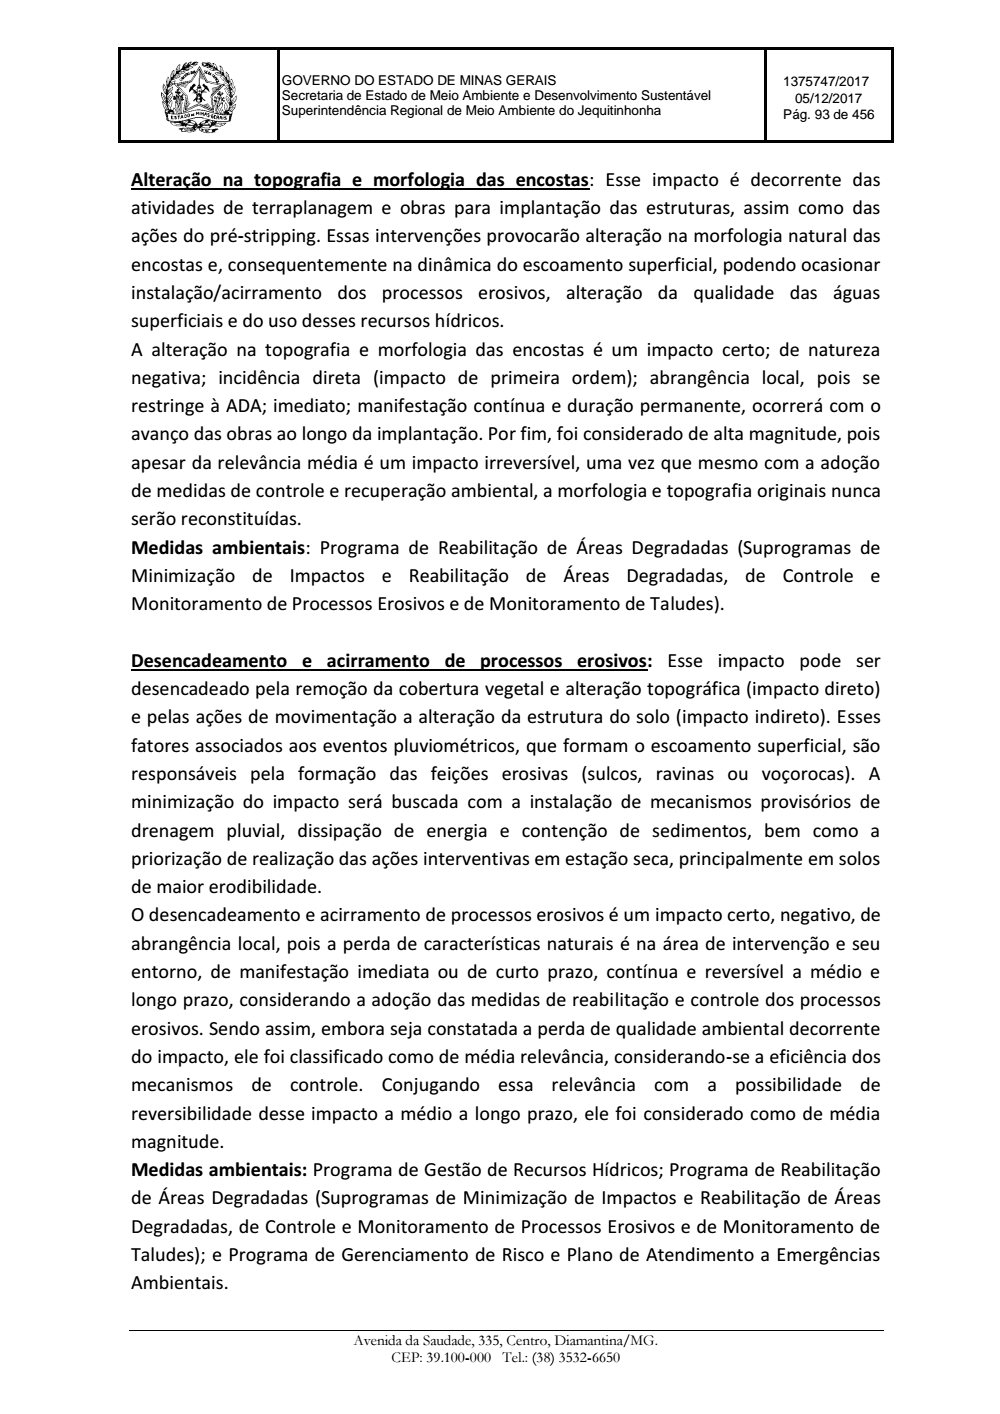 Page 93 from Parecer único da Secretaria de estado de Meio Ambiente e Desenvolvimento Sustentável (SEMAD)